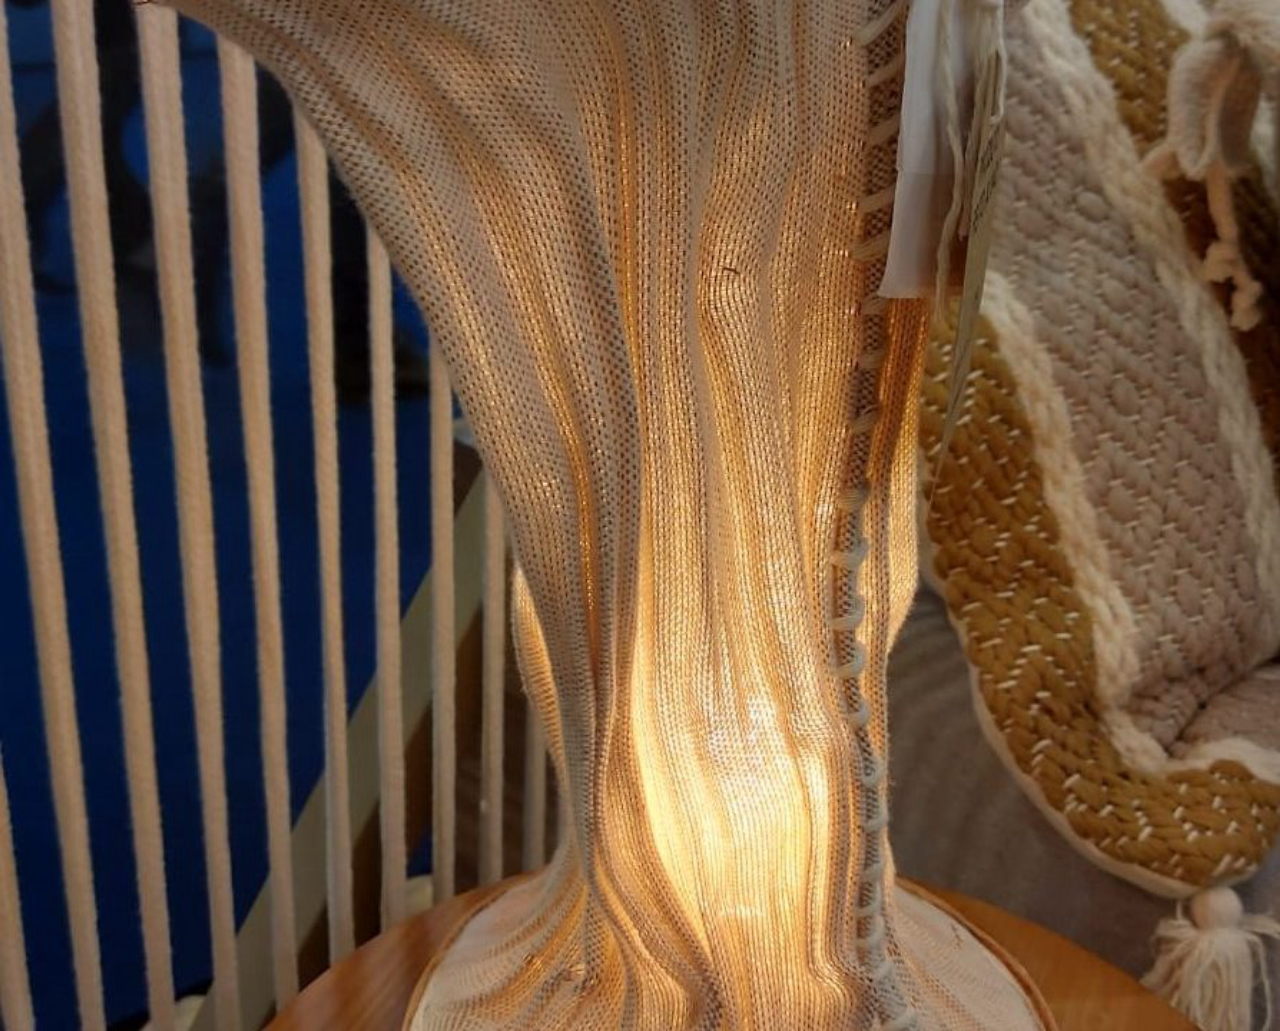 Luminária da linha Terra do Sol, por Santa Luzia Redes e Decoração, tem forma orgânica em trama e fio de cobre, com acabamento em couro na base. 